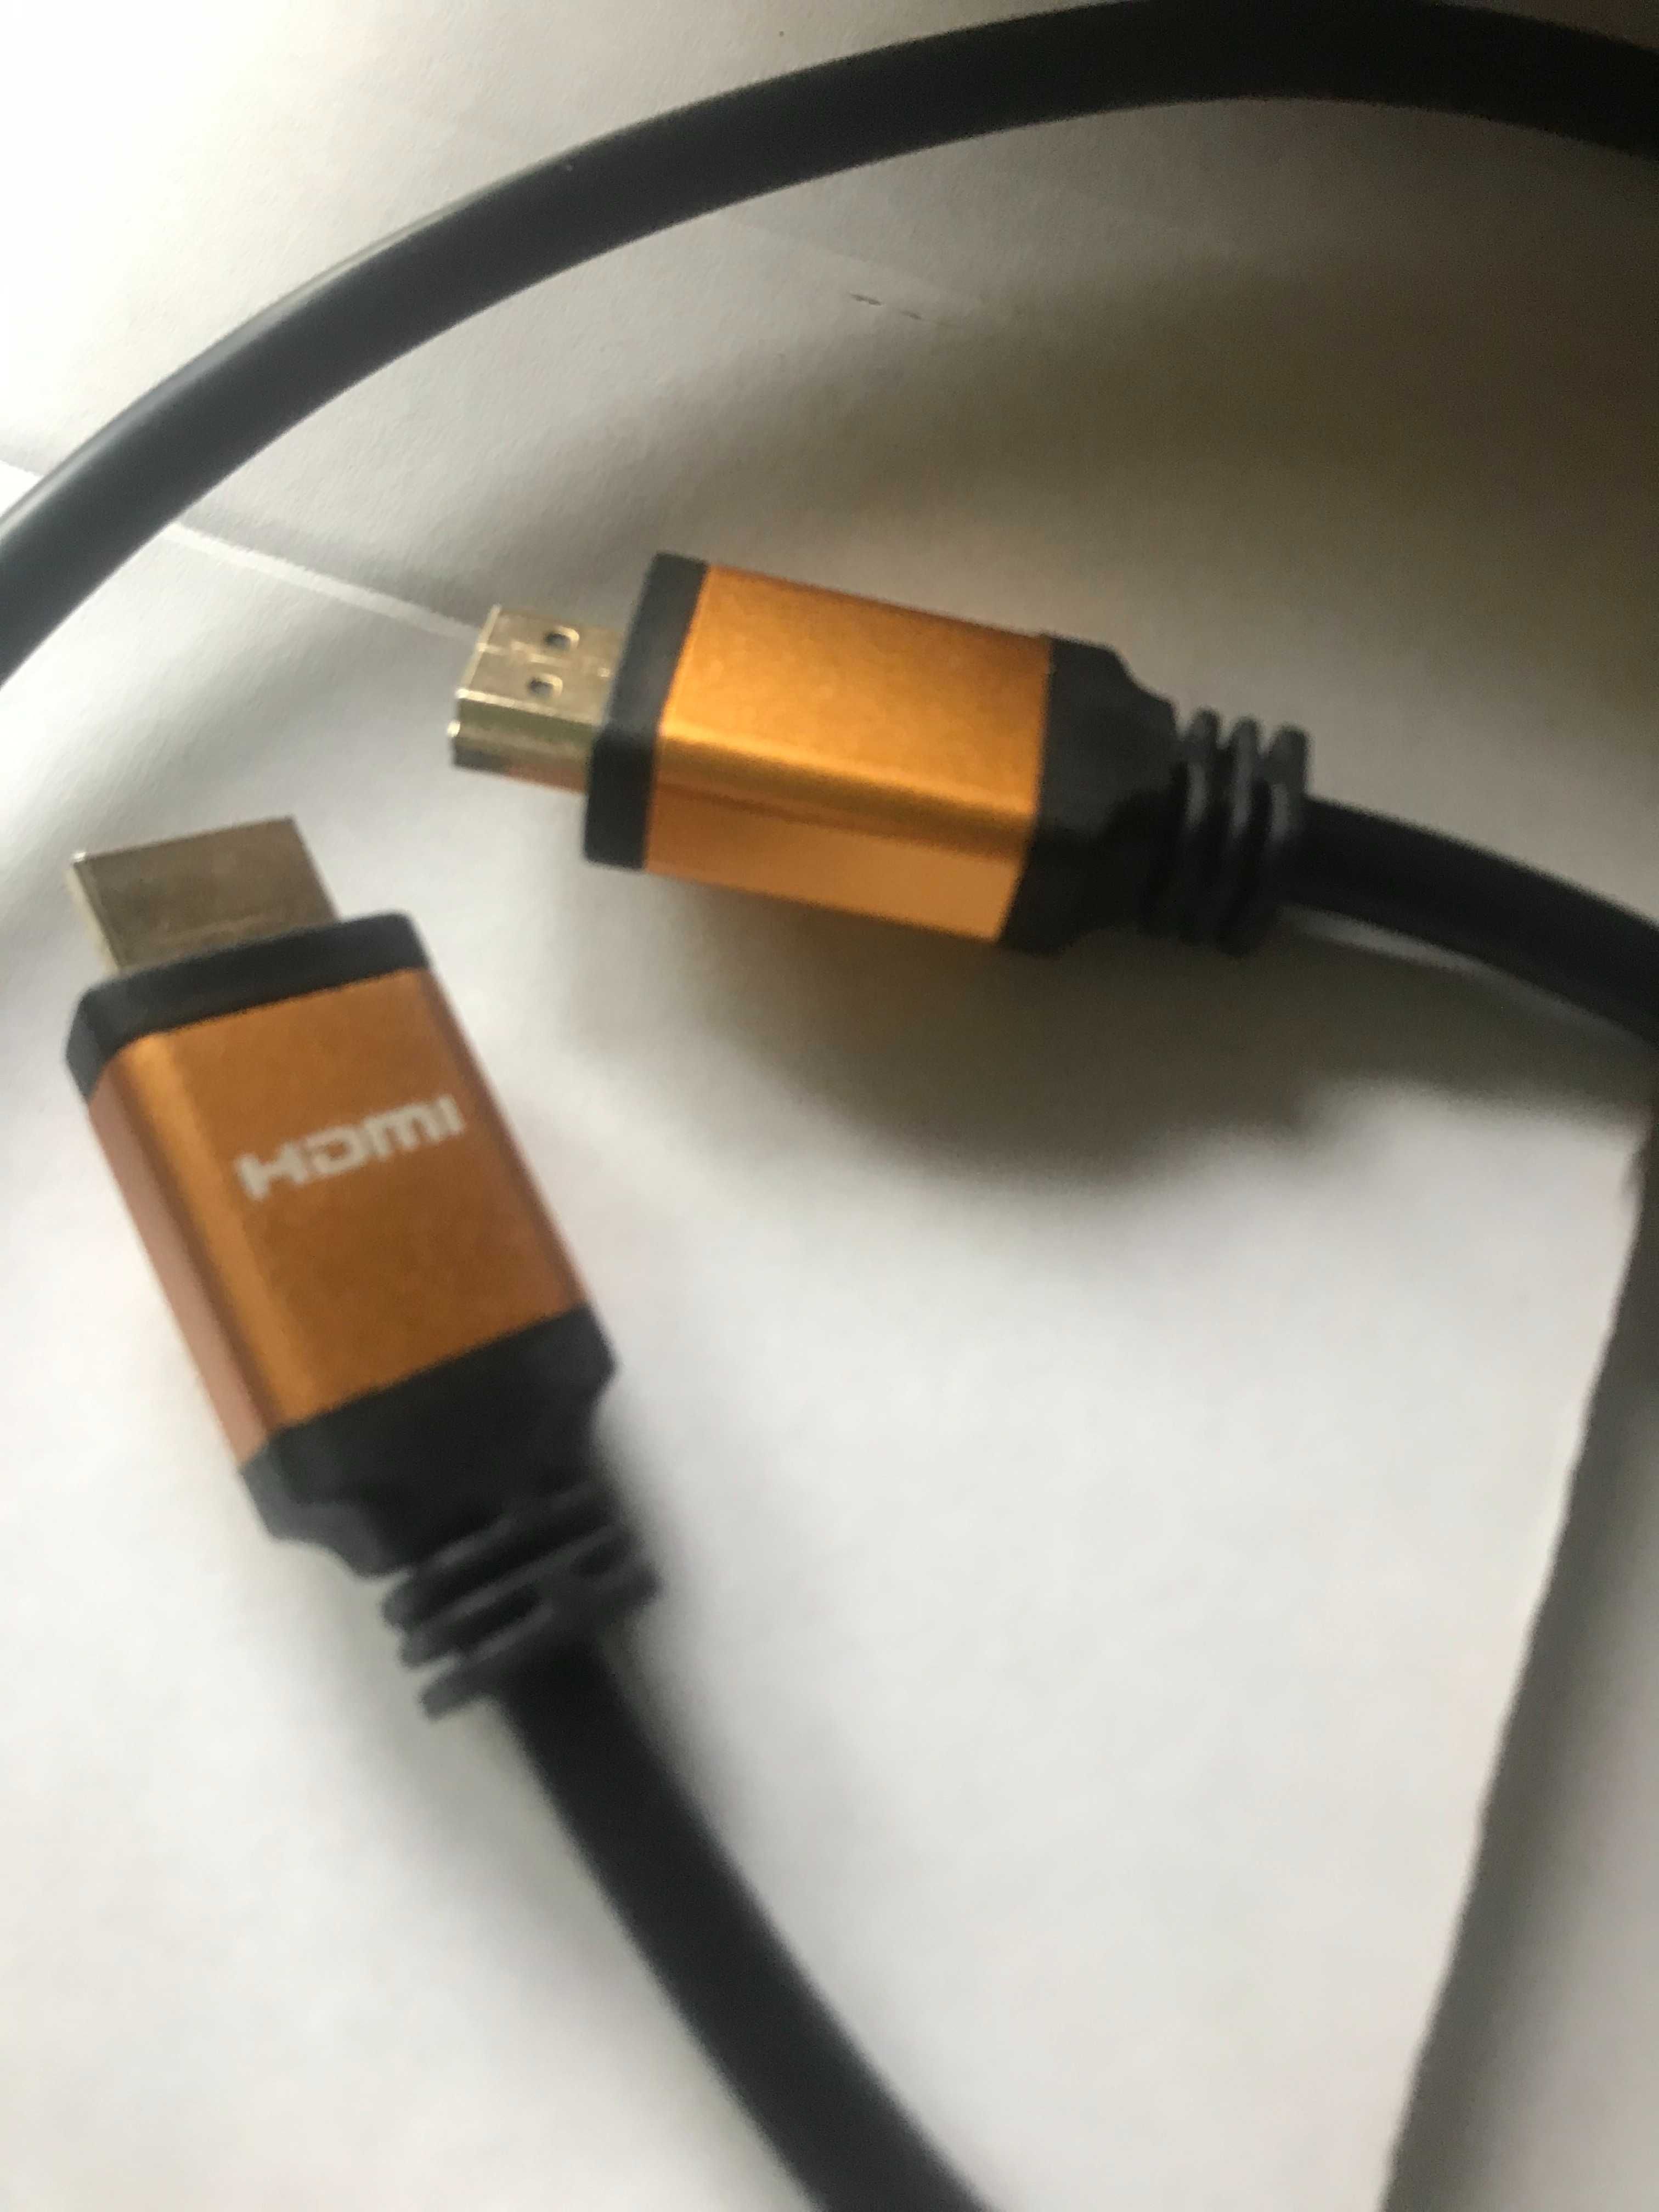 Ультра высокоскоростной кабель HDMI-HDMI 1,2 метра